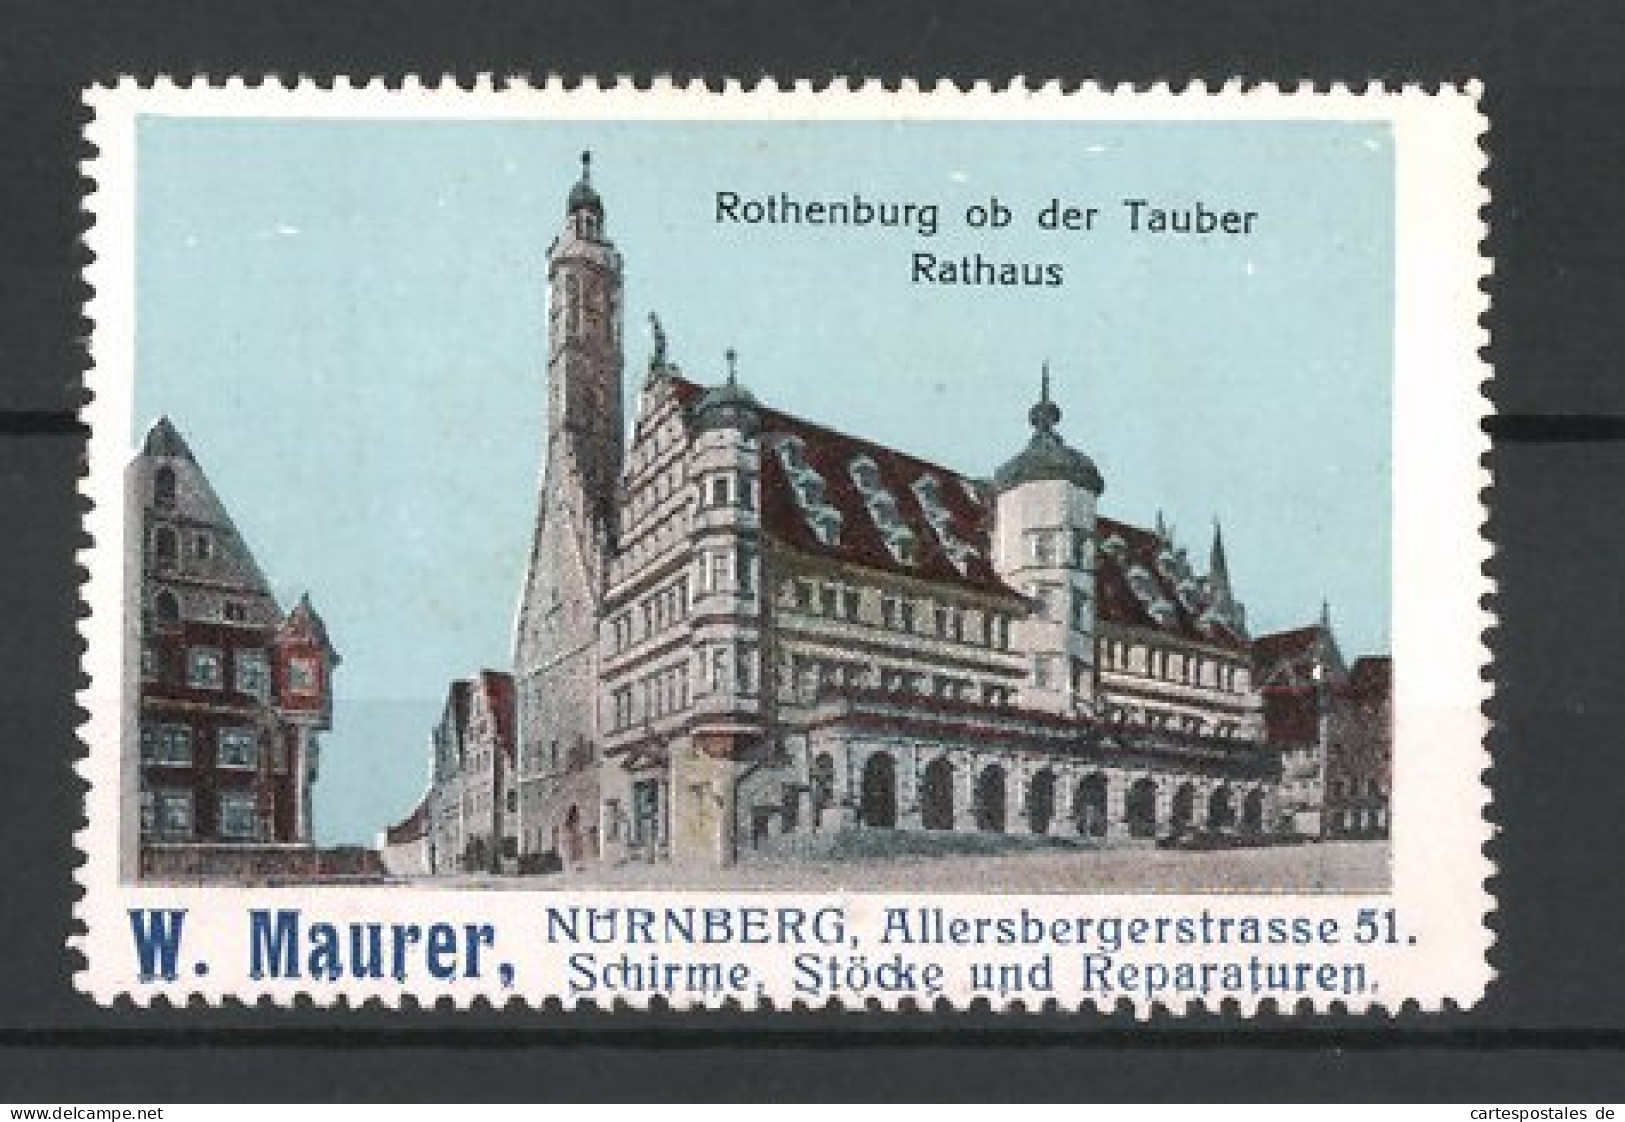 Reklamemarke Rothenburg Ob Der Tauber, Rathaus, Schirme & Stöcke Der Firma W. Maurer, Nürnberg  - Vignetten (Erinnophilie)